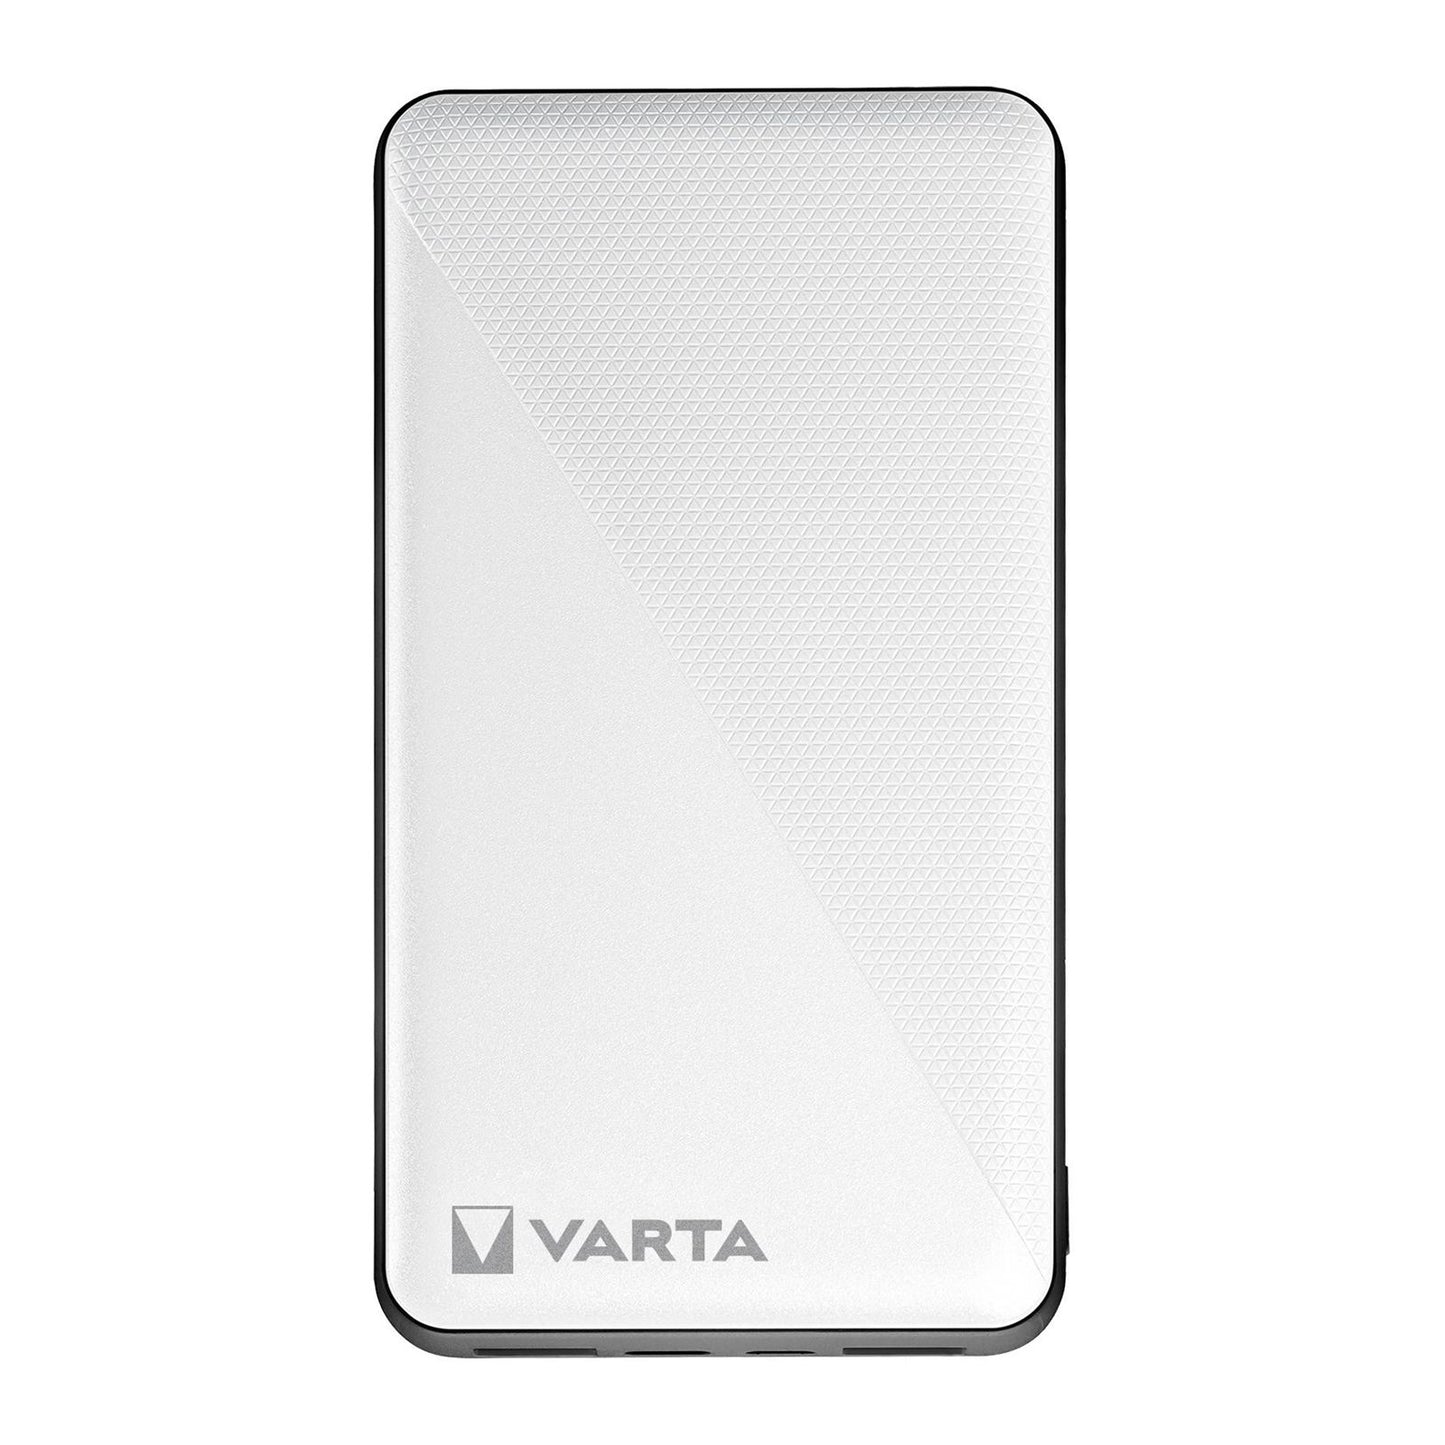 VARTA Power Bank 20.000mAh con una uscita USB-C e due uscite USB-B, ricarica veloce, carica fino a 3 dispositivi contemporaneamente